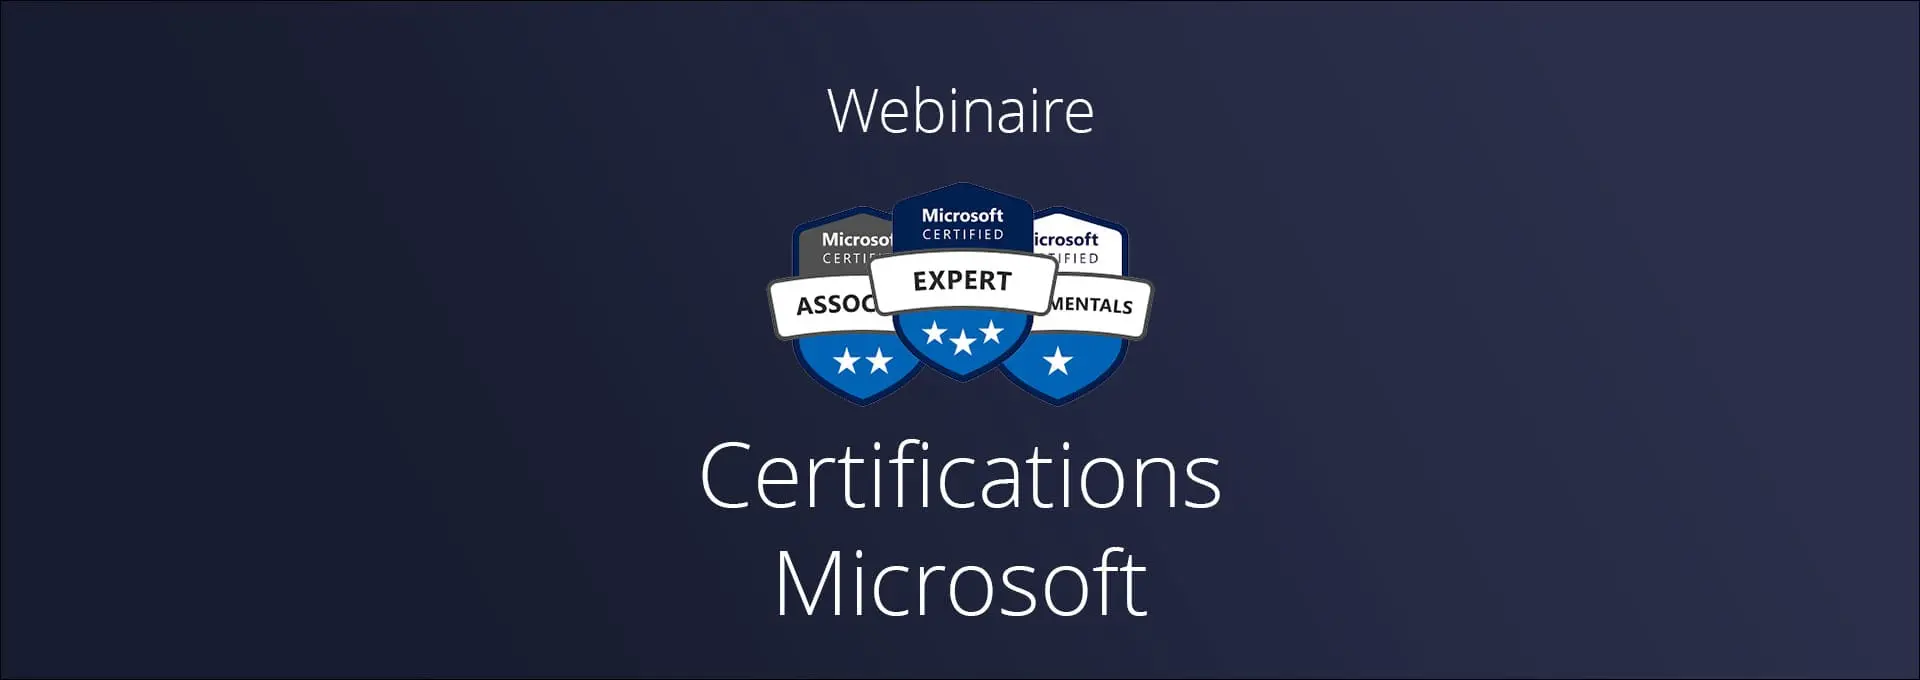 Actualités Webinaires - Les nouvelles Certifications Microsoft à l’ère du Cloud